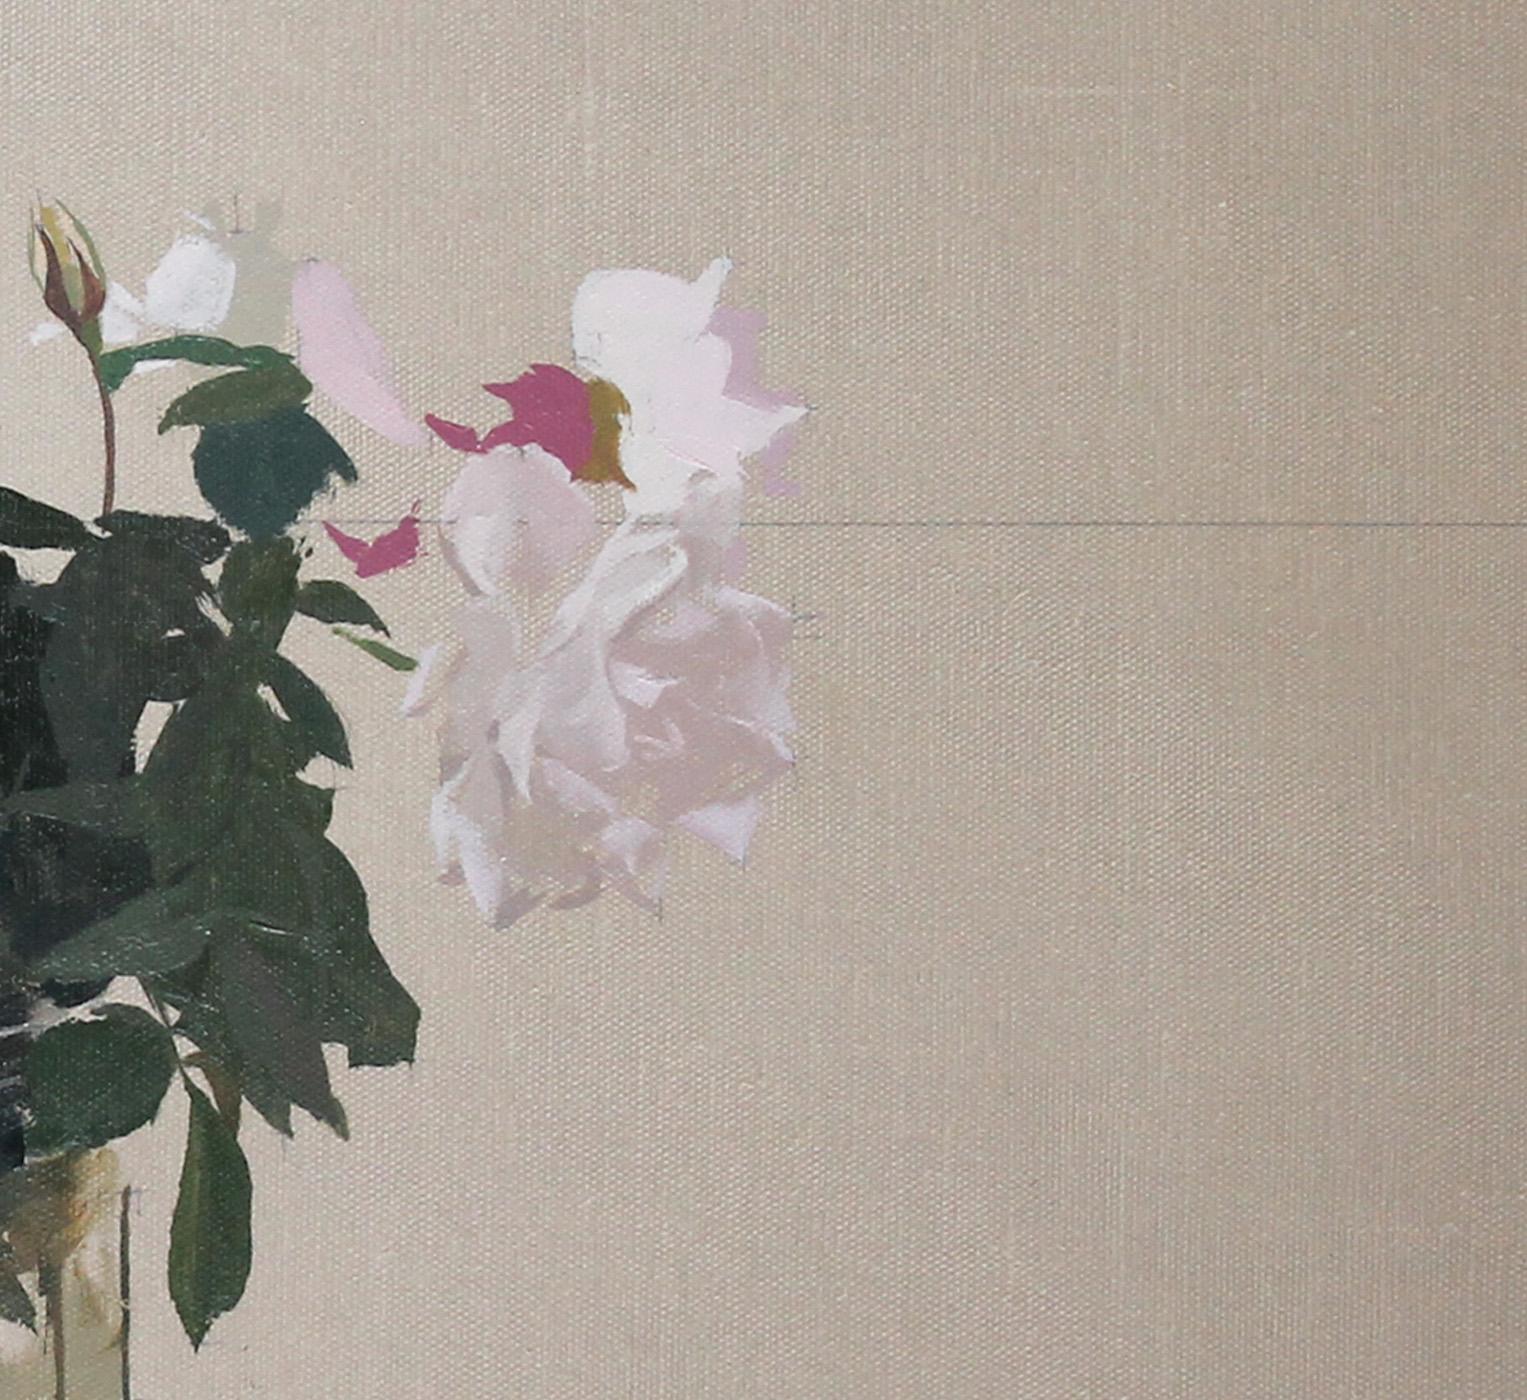 Garden Roses 1 - Gray Still-Life Painting by Martin Dimitrov